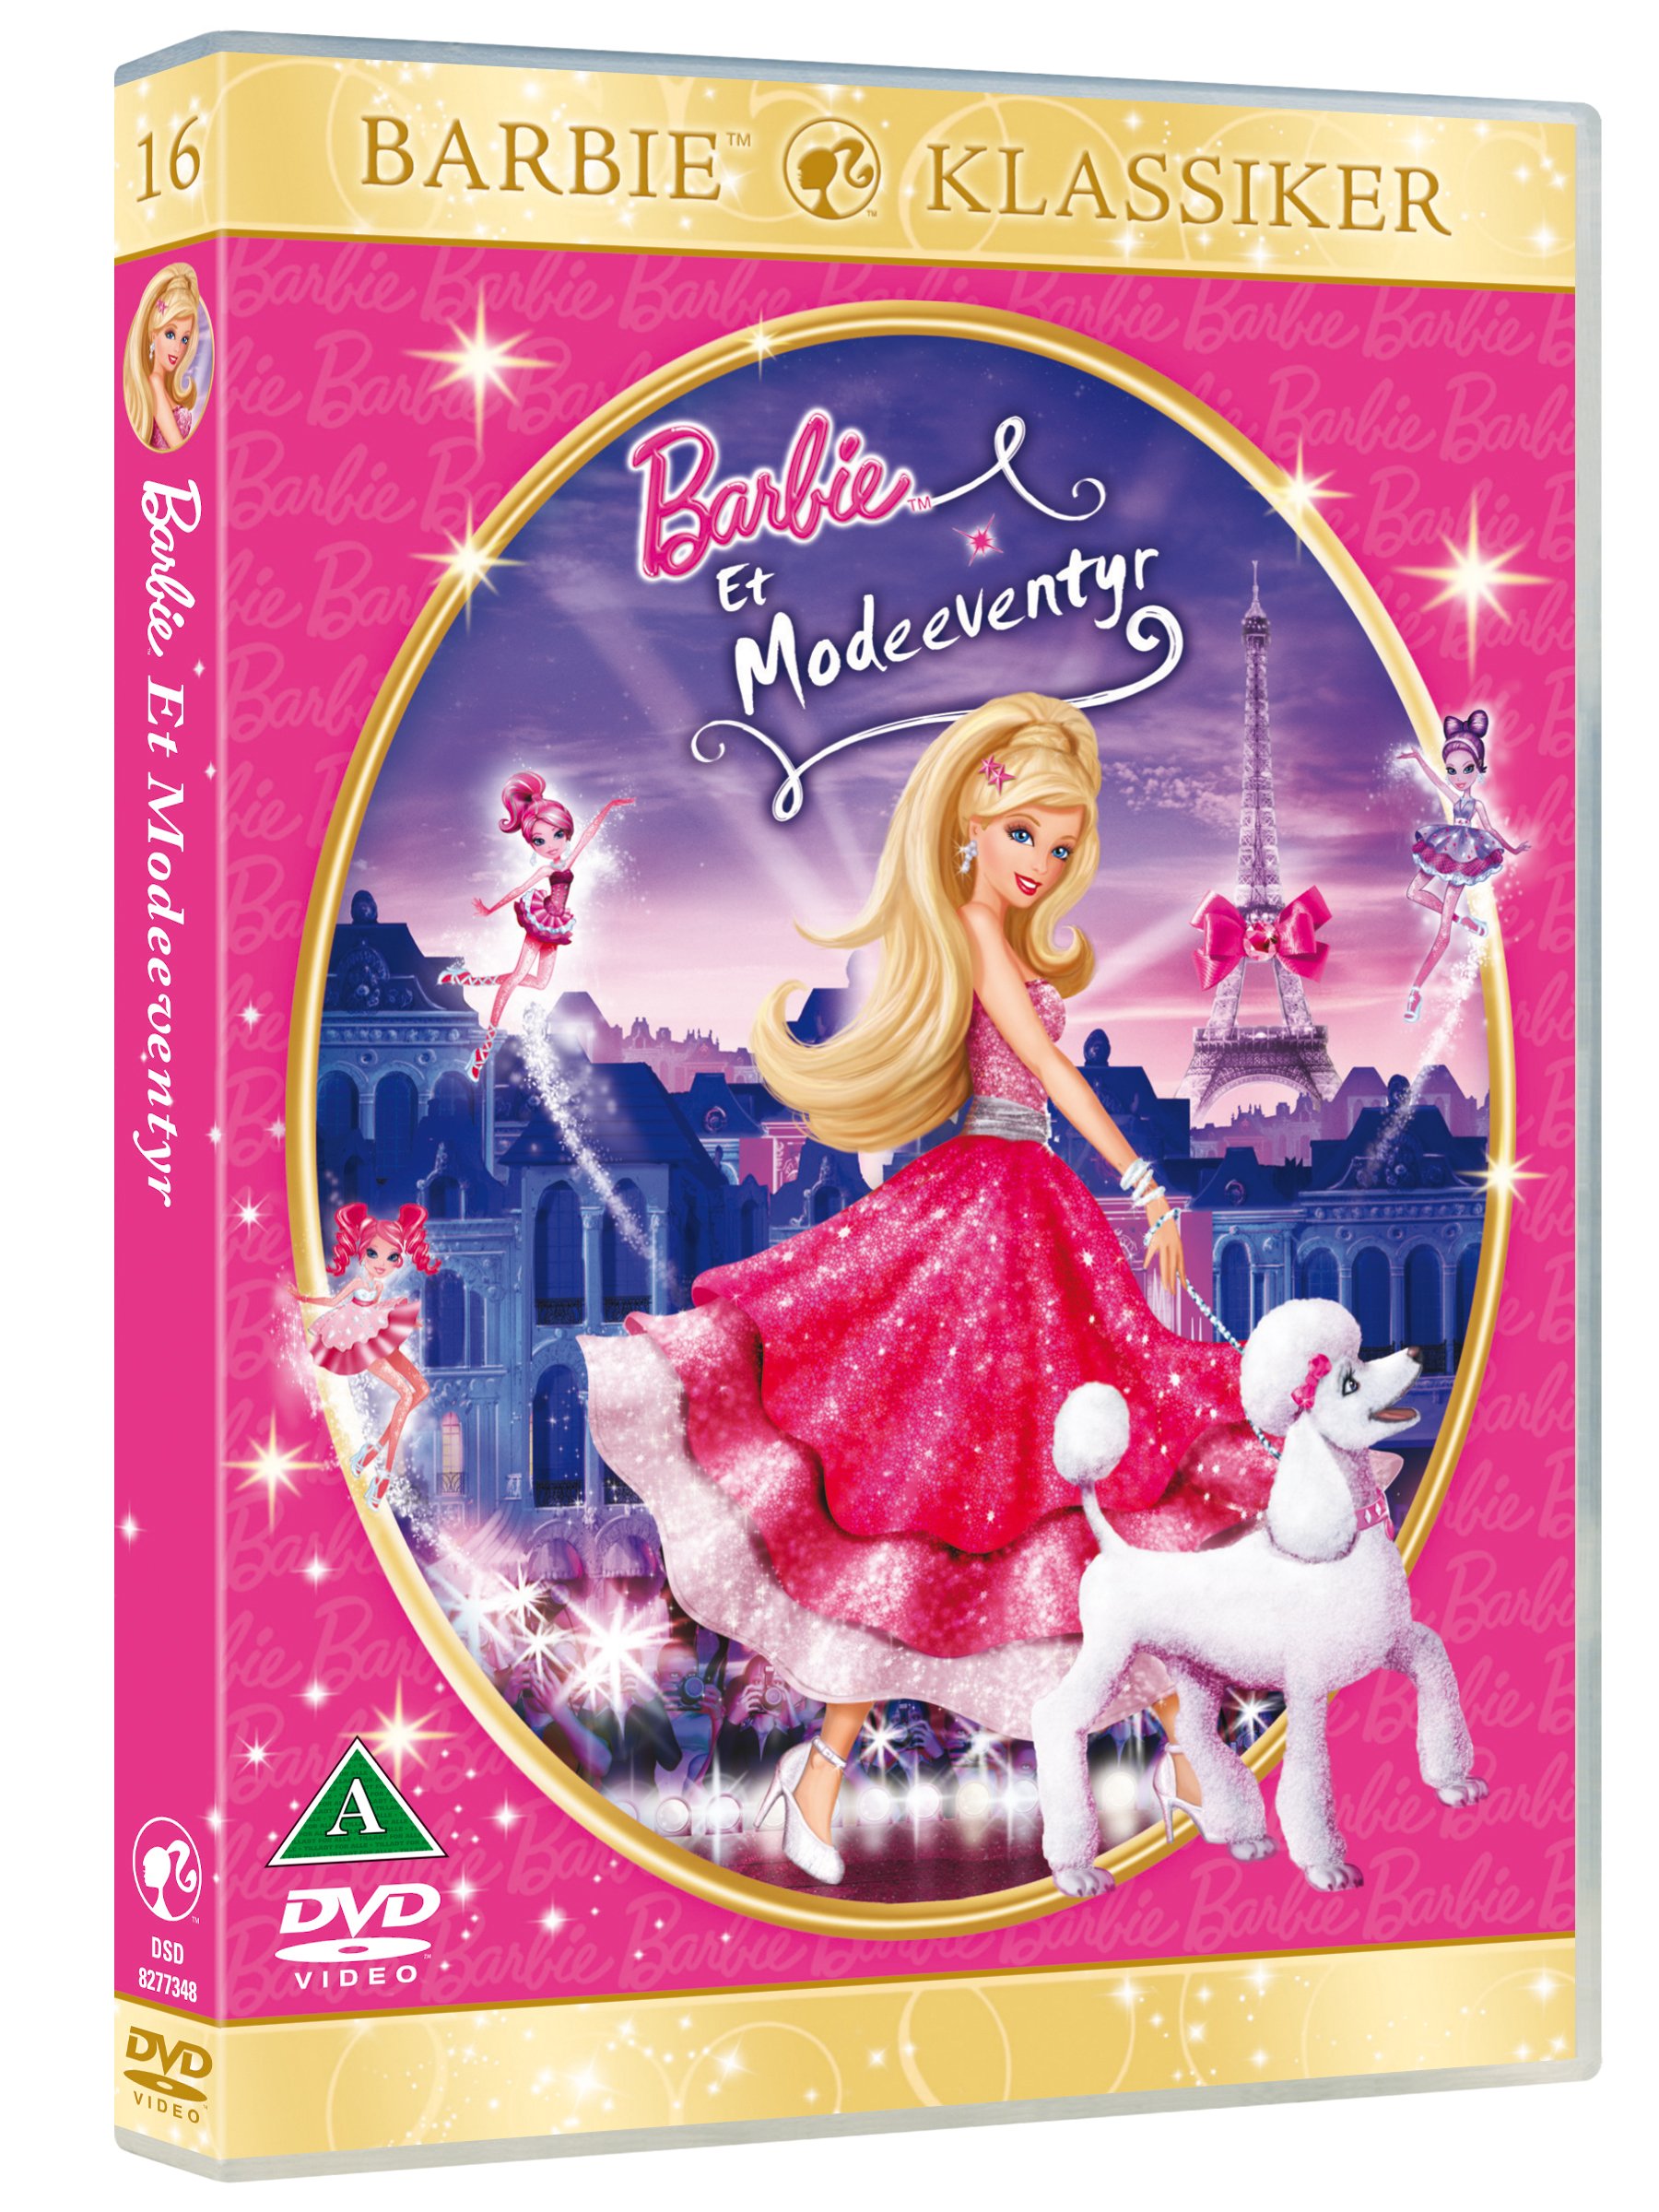 Indsigtsfuld Summen gået vanvittigt Køb Barbie i et Modeeventyr (NO. 16) - DVD